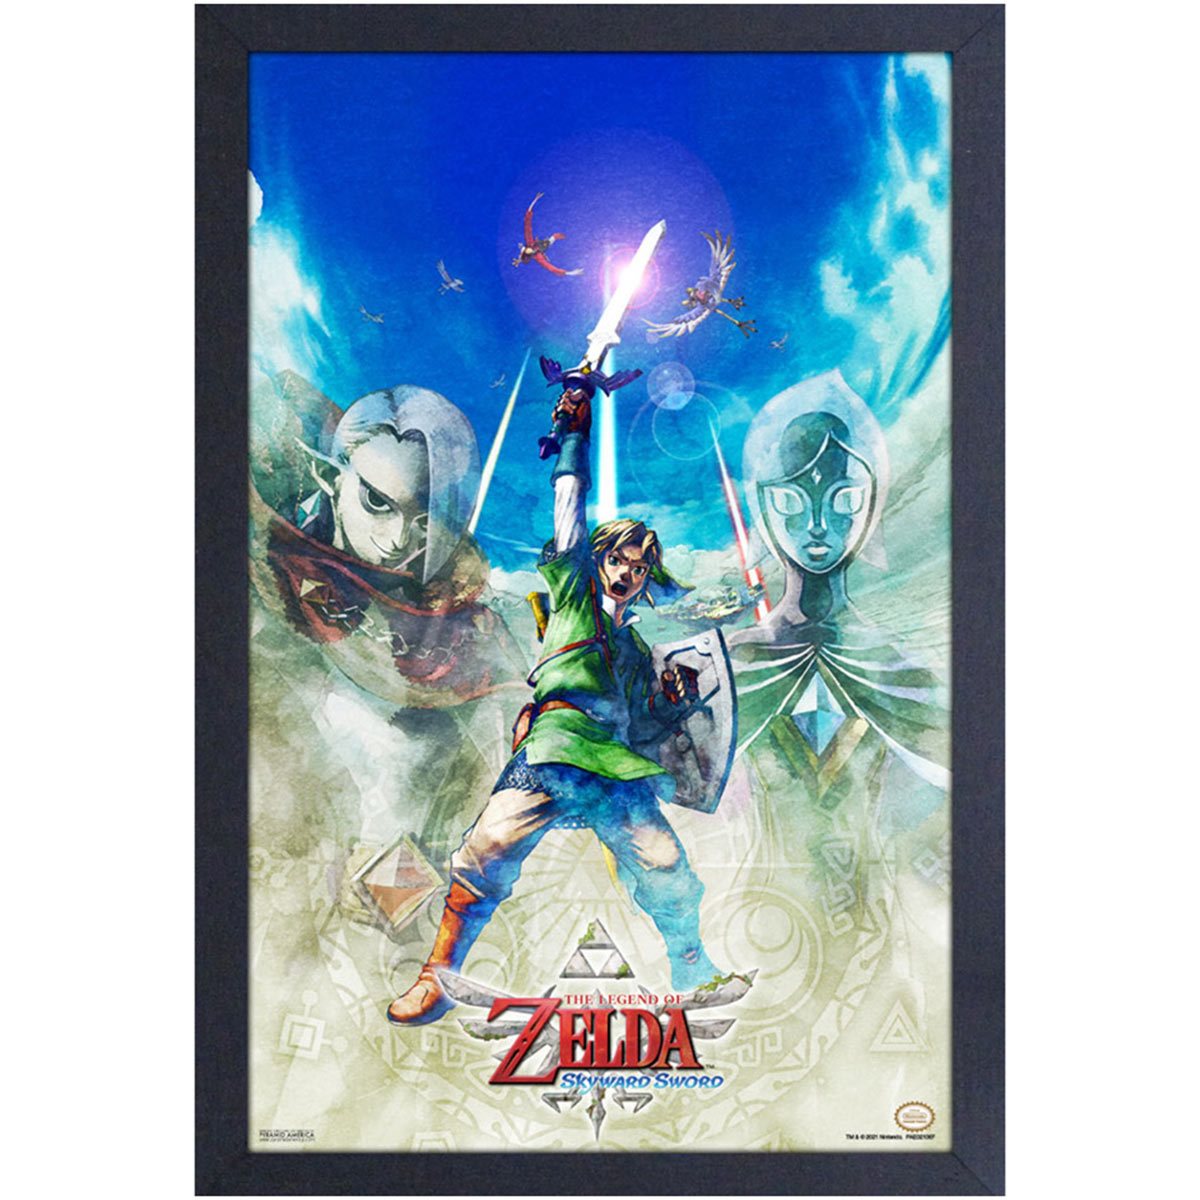  Pyramid America Zelda Poster - The Legend of Zelda